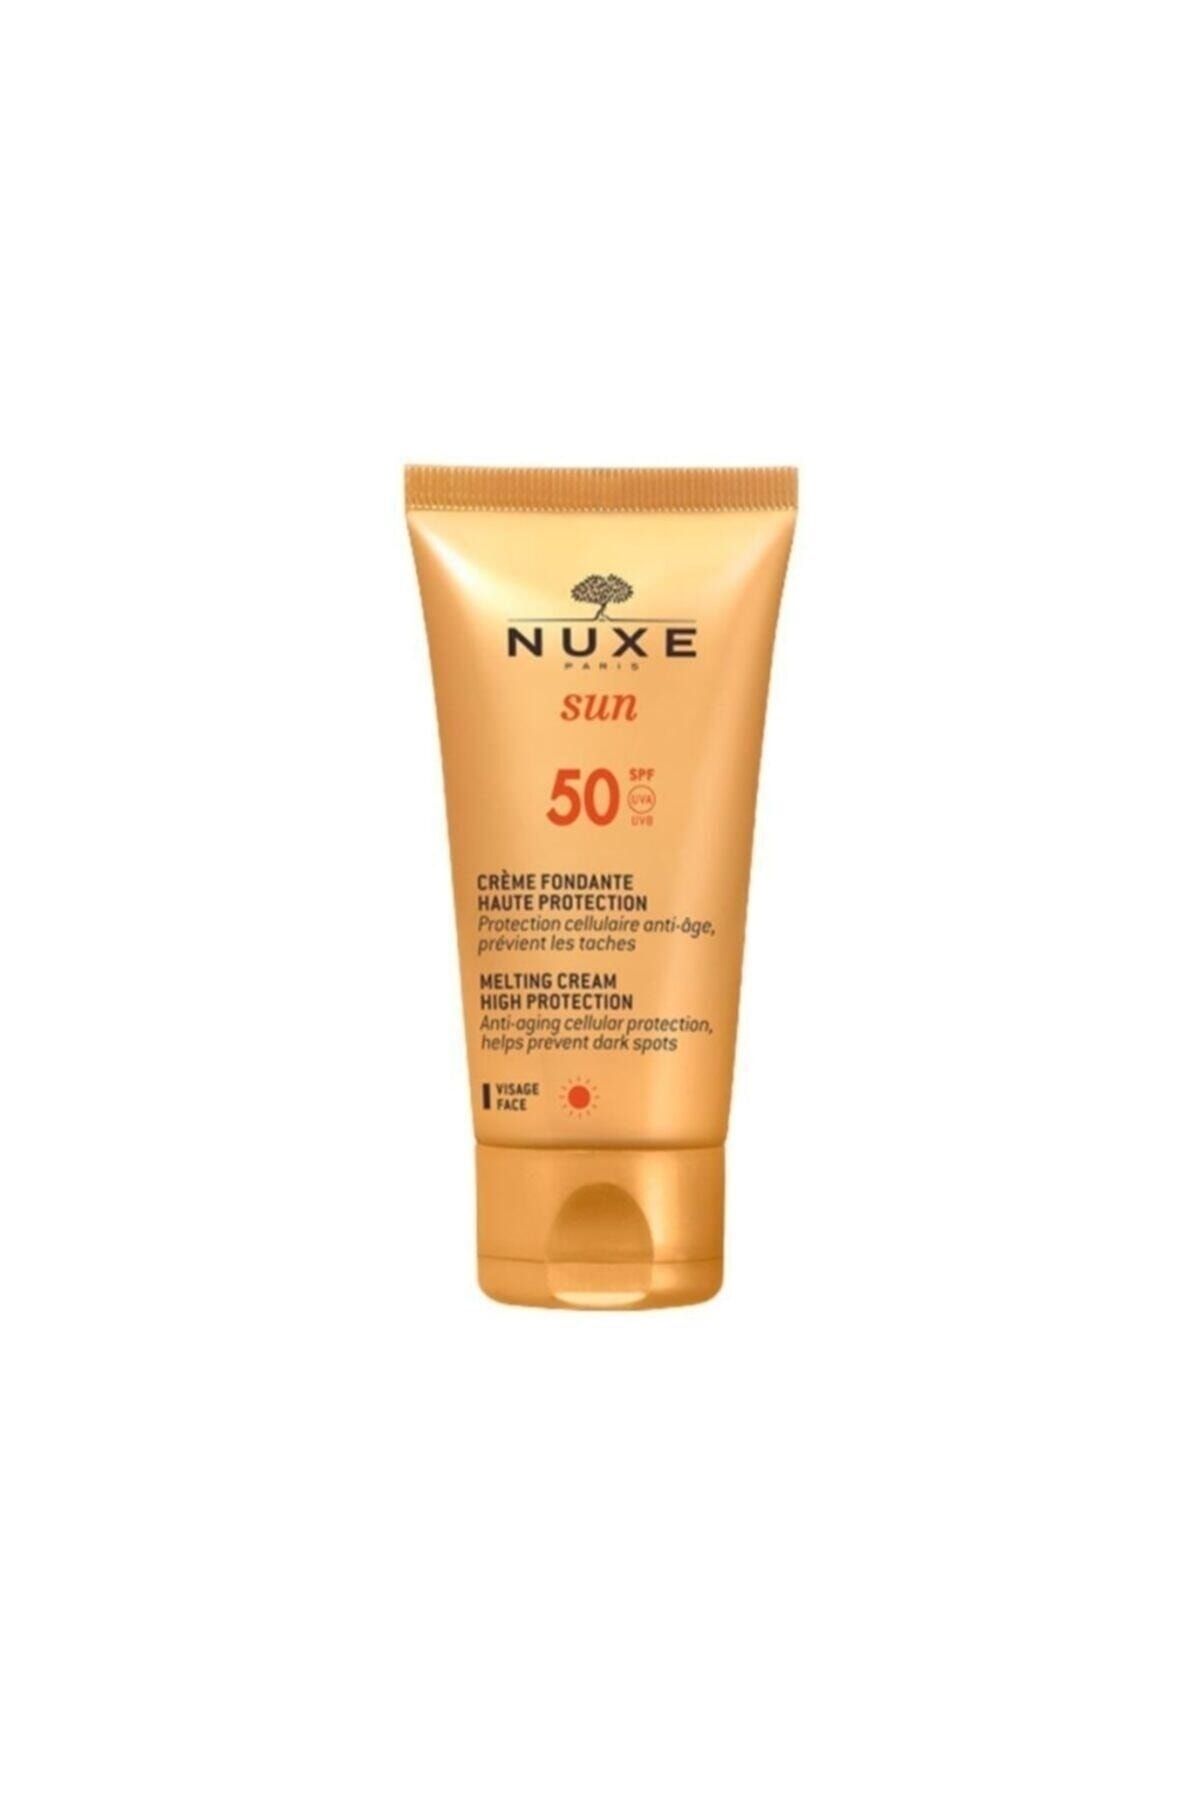 Nuxe Sun - Creme Fondante Visage Haute Protection Spf50 50 ml - Güneş Koruyucu Yüz Kremi